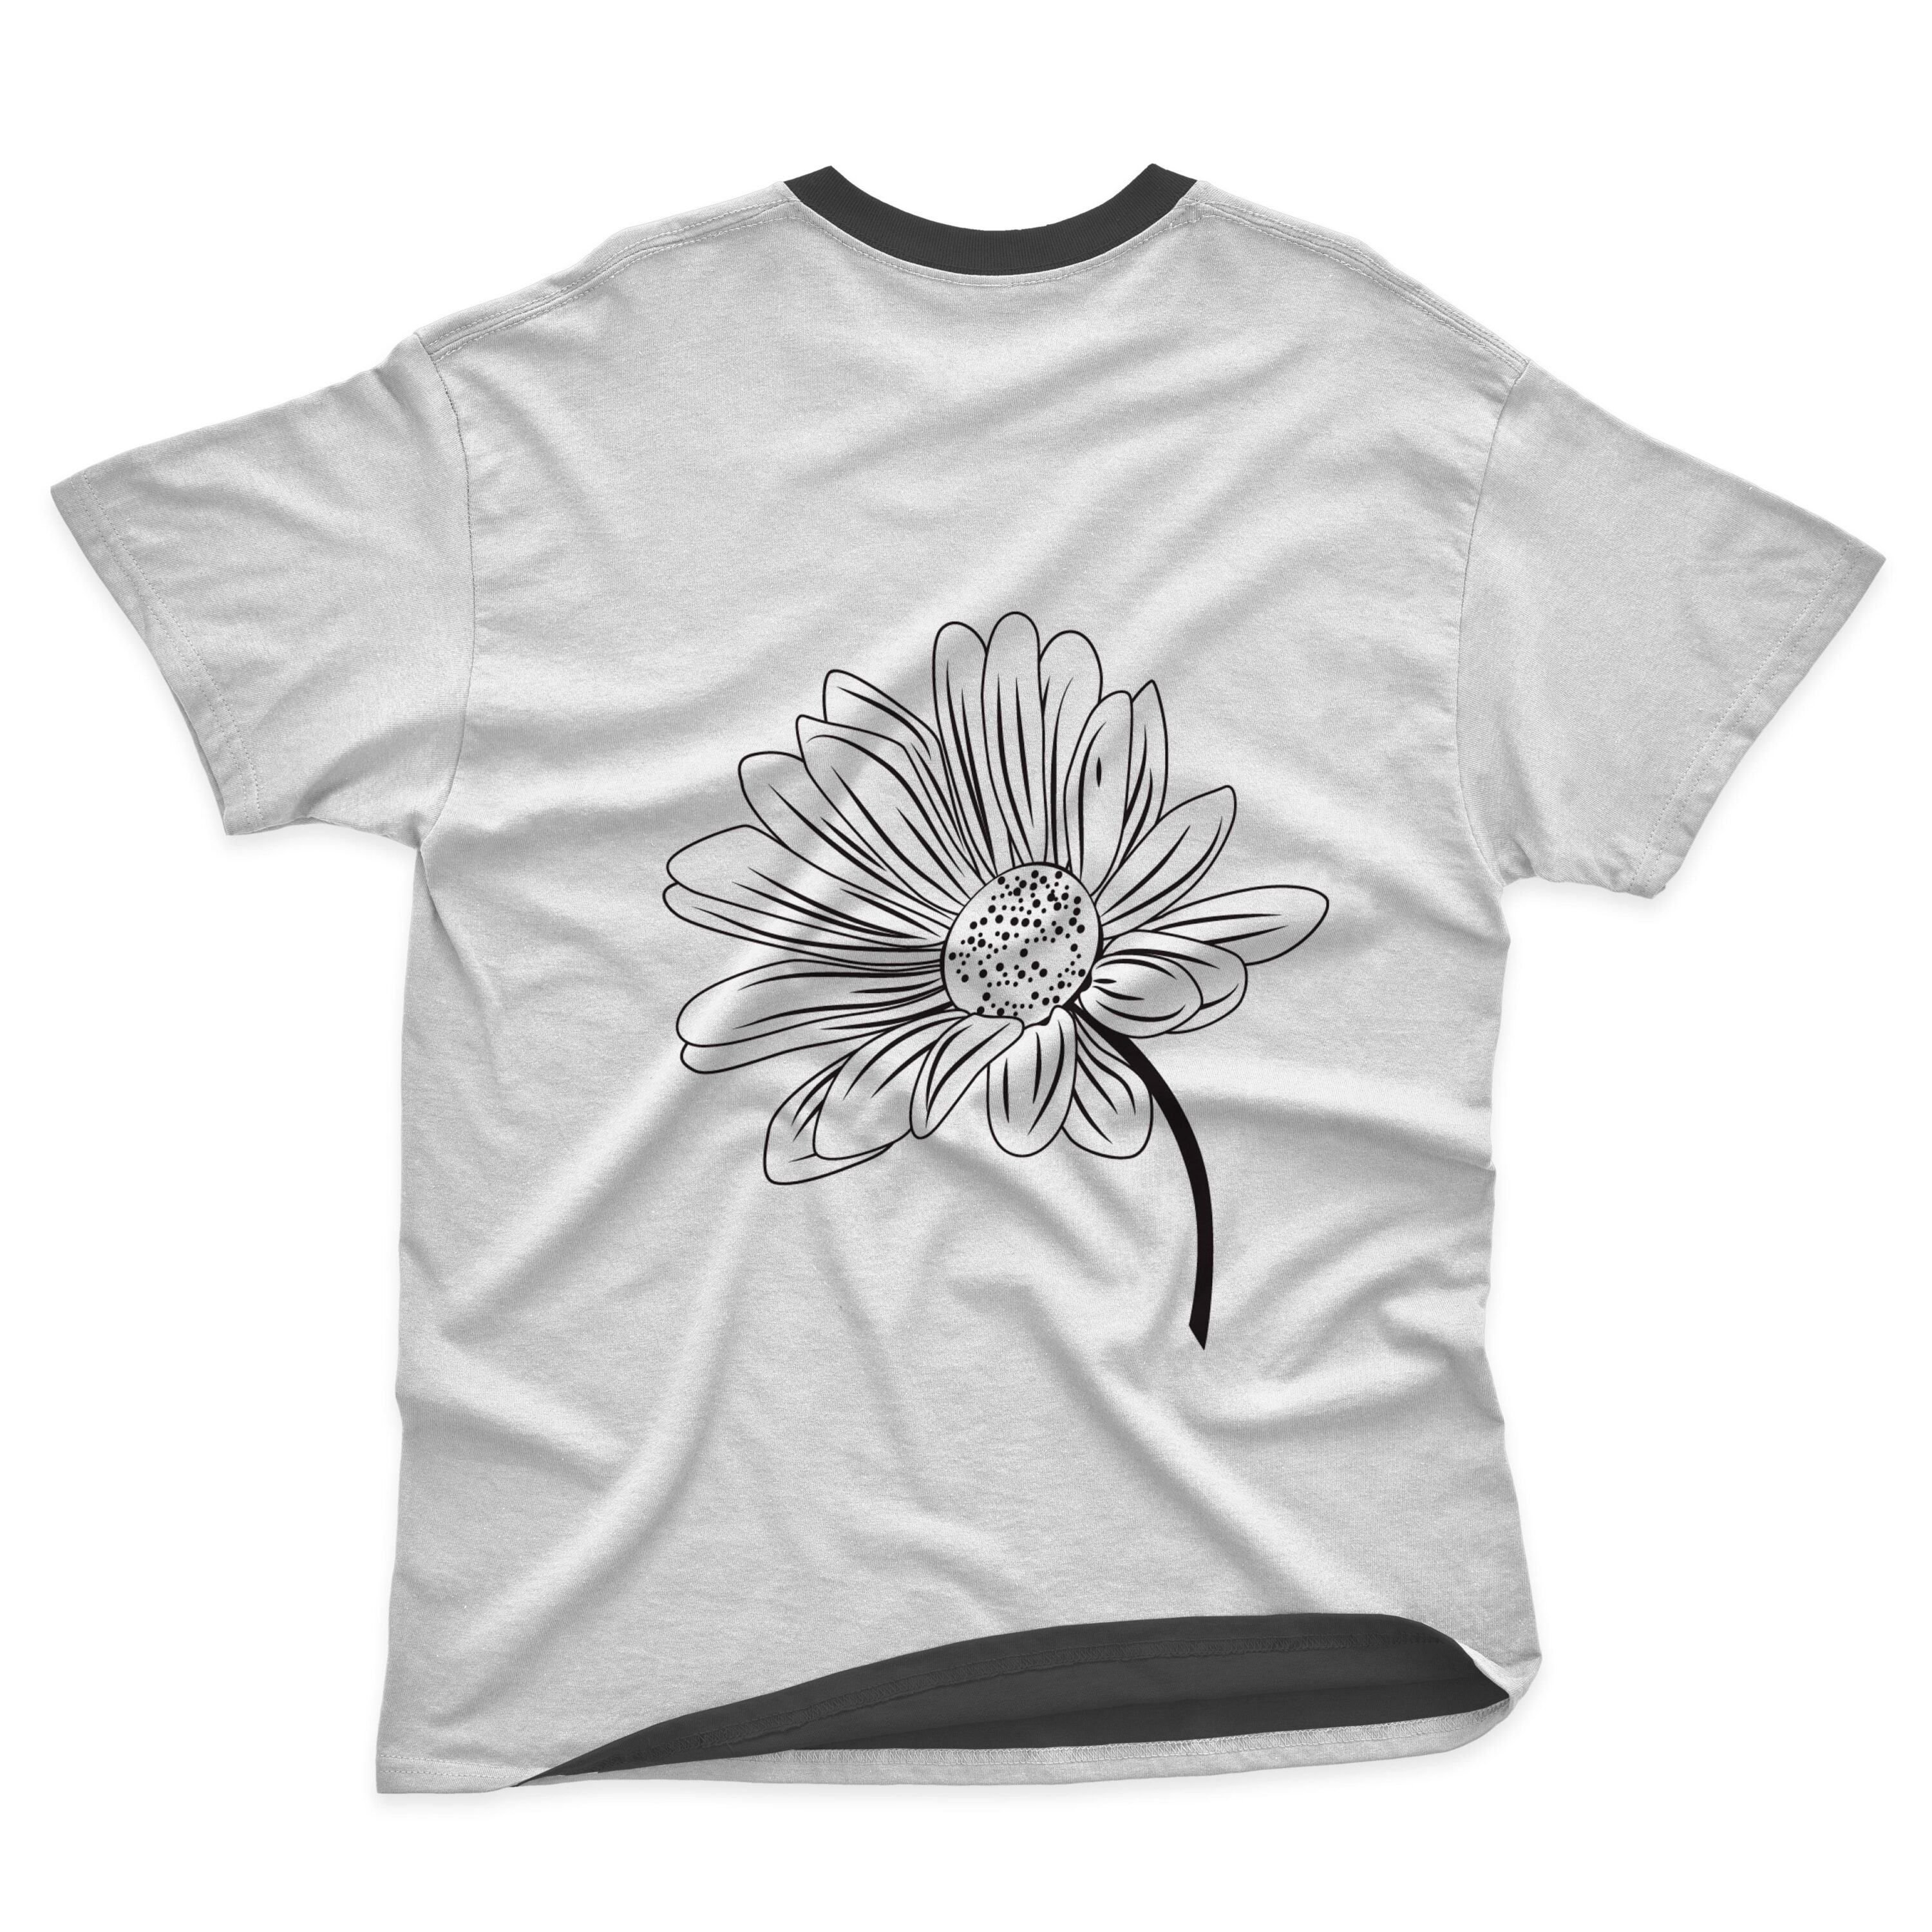 Daisy flower nature line art design t-shirt